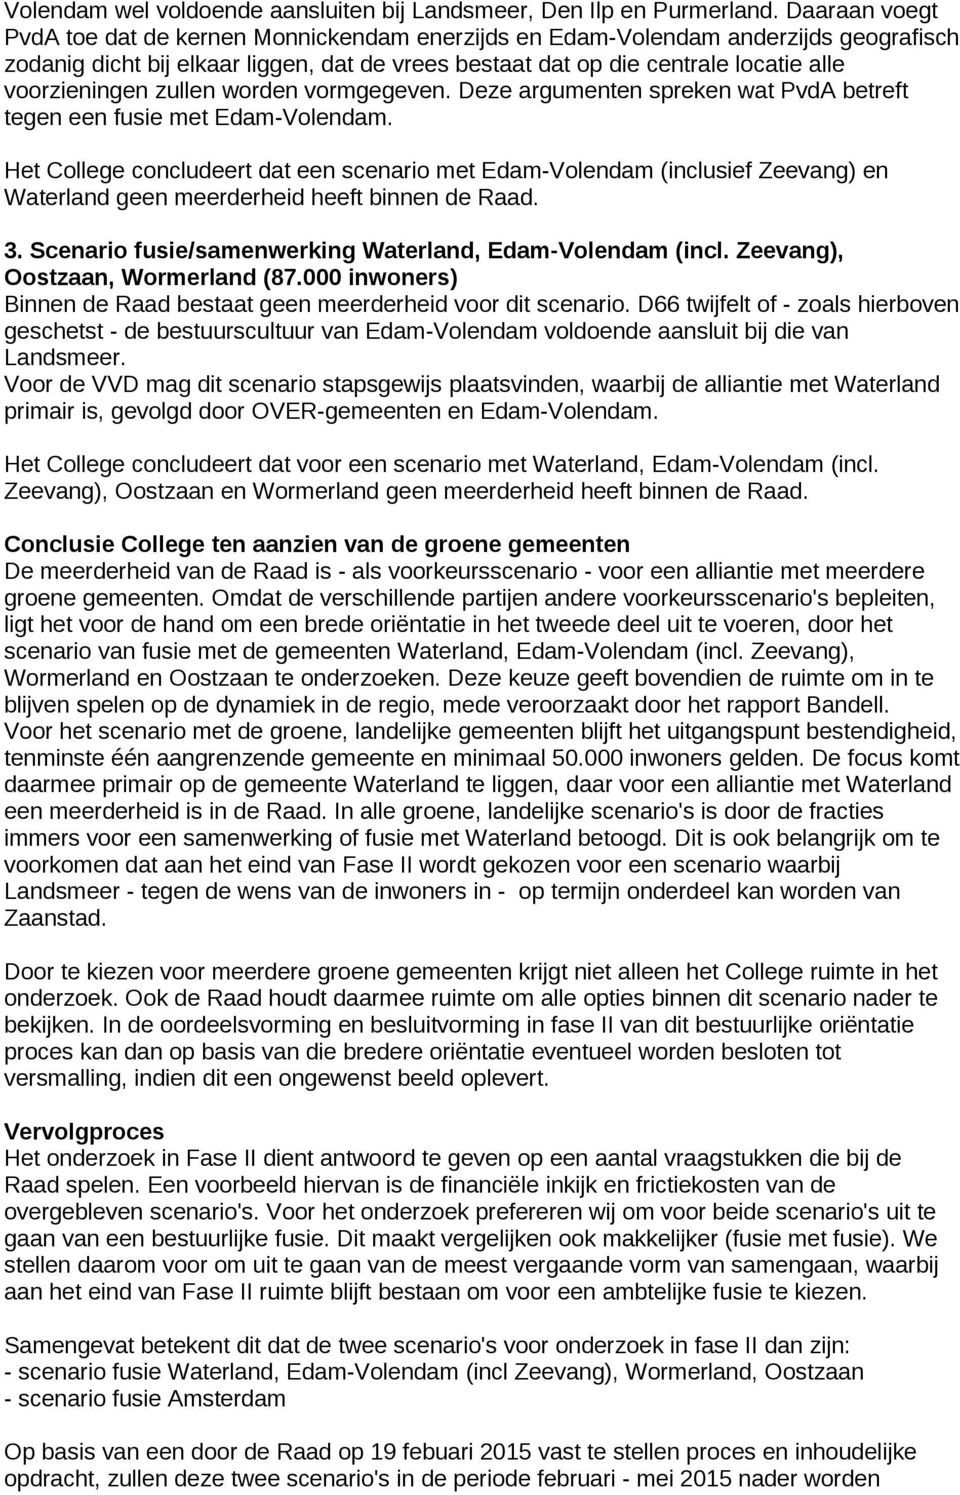 voorzieningen zullen worden vormgegeven. Deze argumenten spreken wat PvdA betreft tegen een fusie met Edam-Volendam.